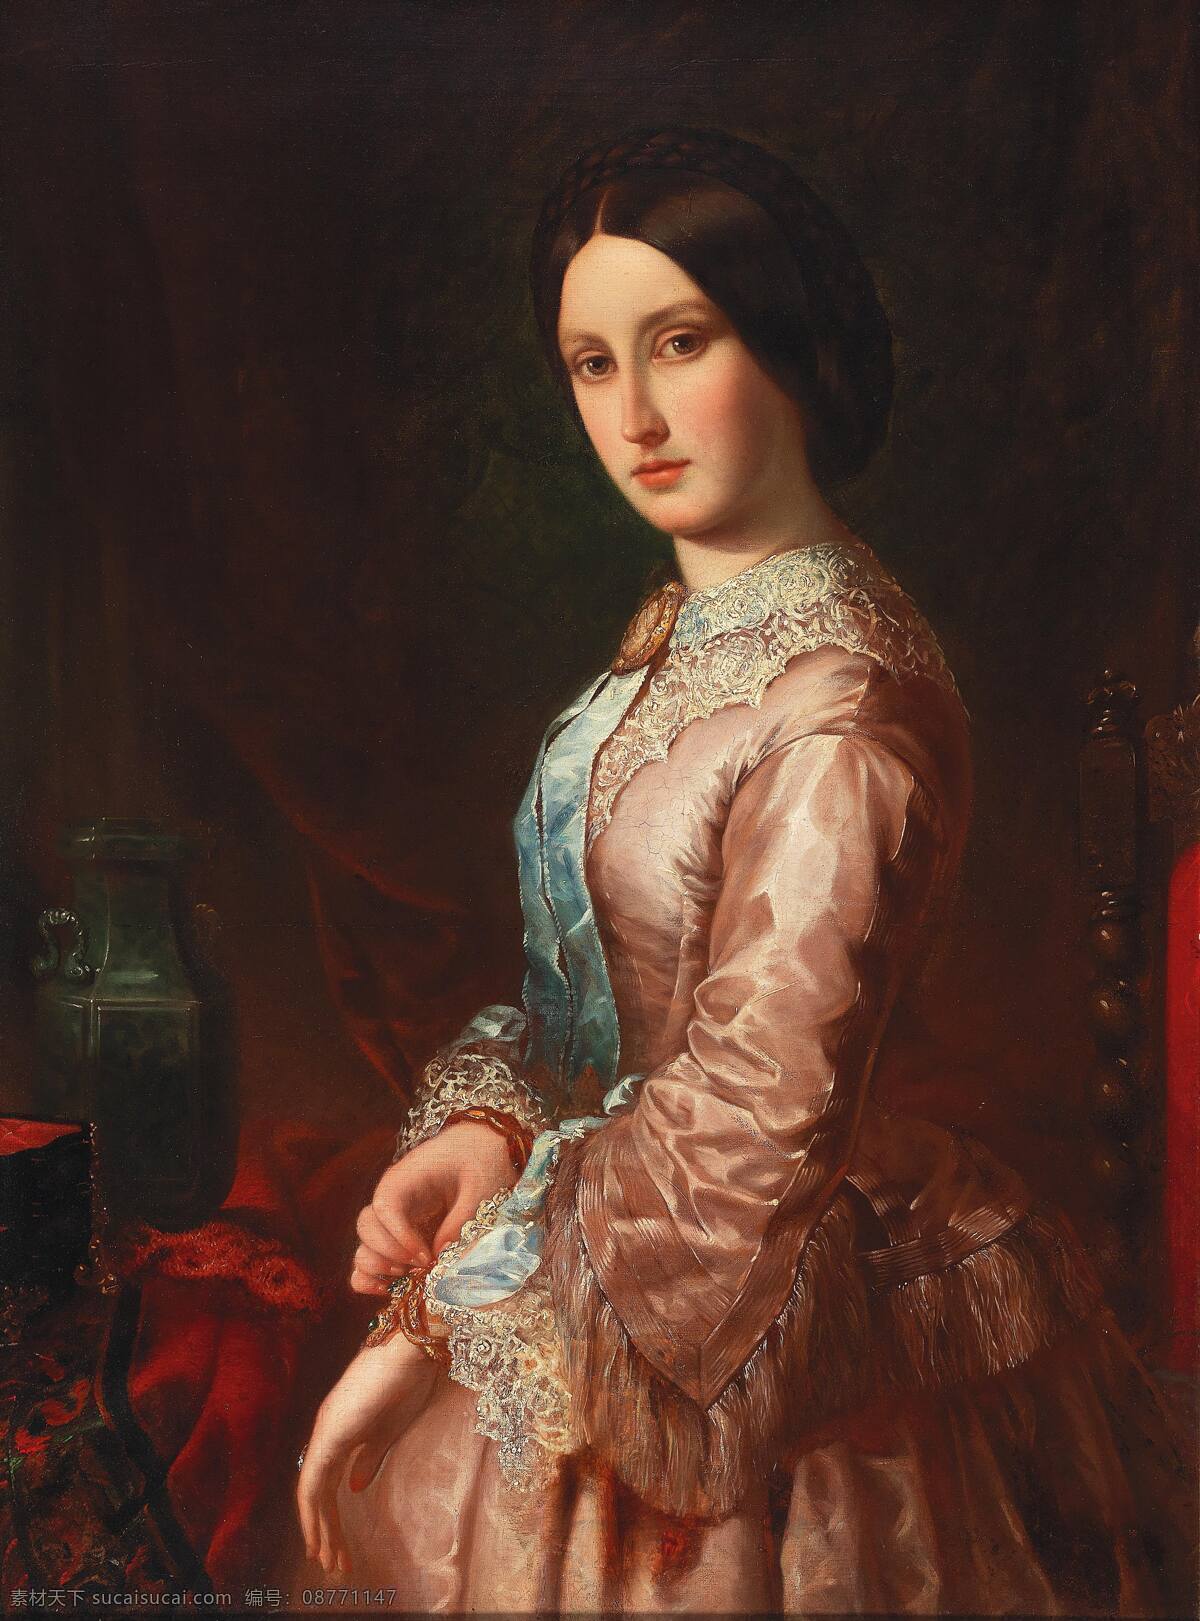 一个 年轻 女子 肖像 弗朗茨萨维尔 温特哈特作品 德国宫廷画家 年轻姑娘 贵族之家 淑女本色 19世纪油画 油画 文化艺术 绘画书法